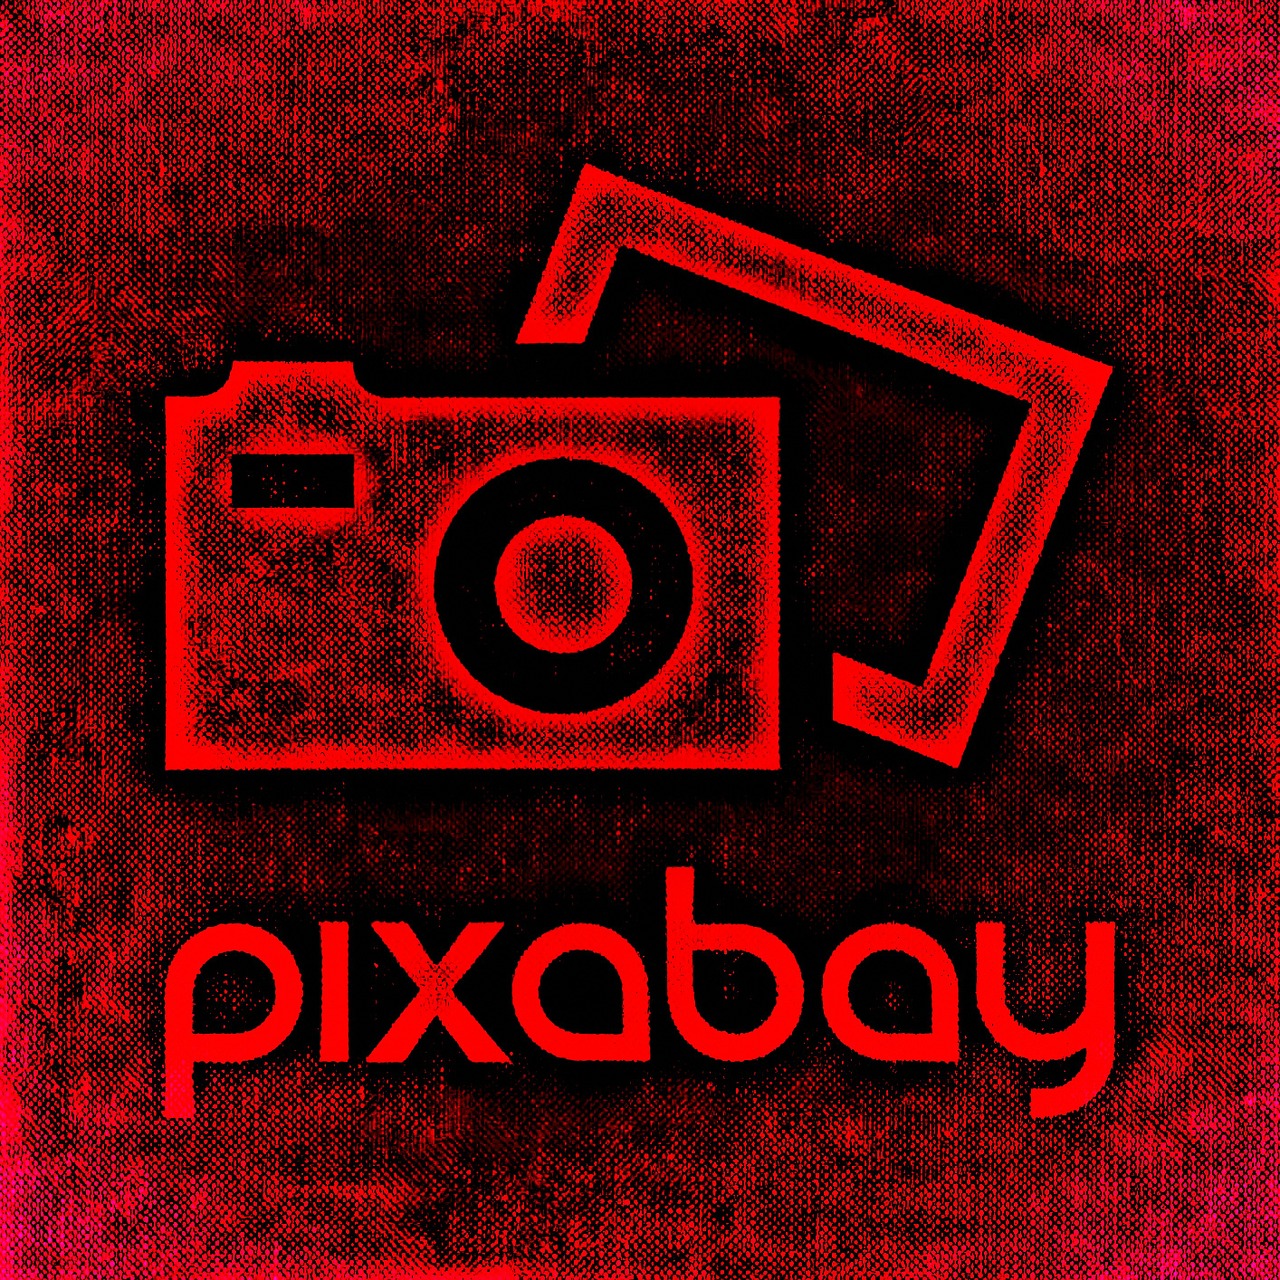 pixabay logo lettering free photo